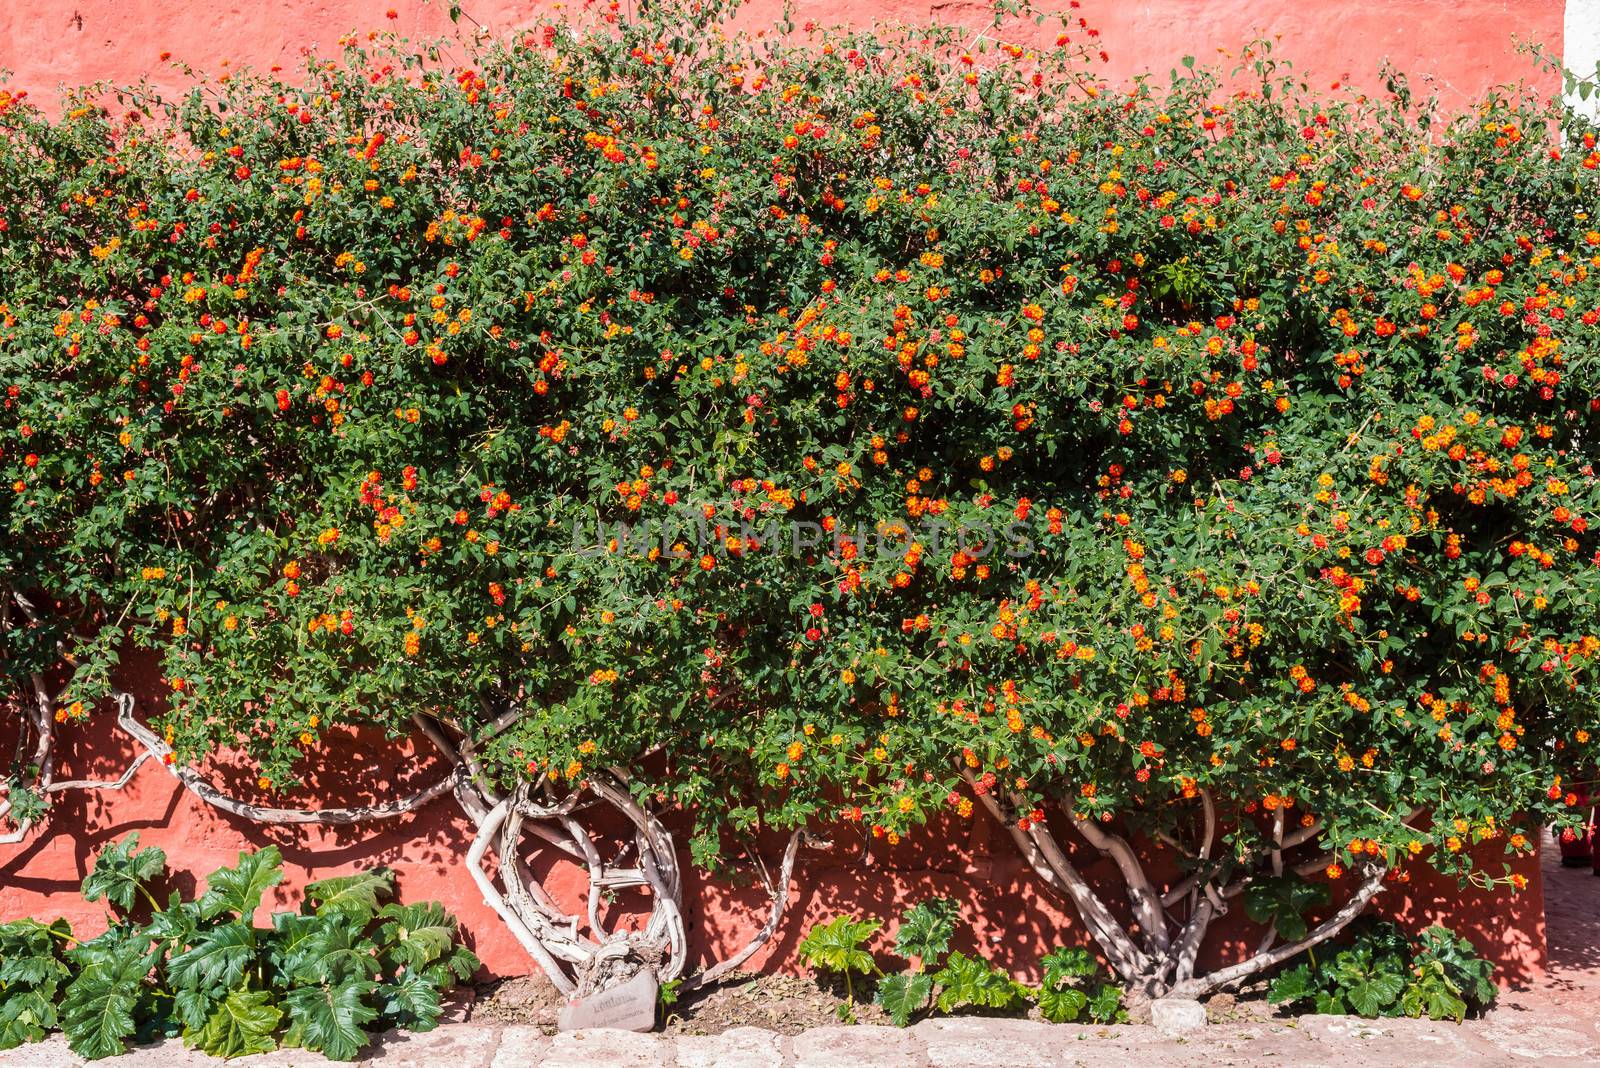 Lantana bush inside Santa Catalina monastery in the peruvian Andes at Arequipa Peru